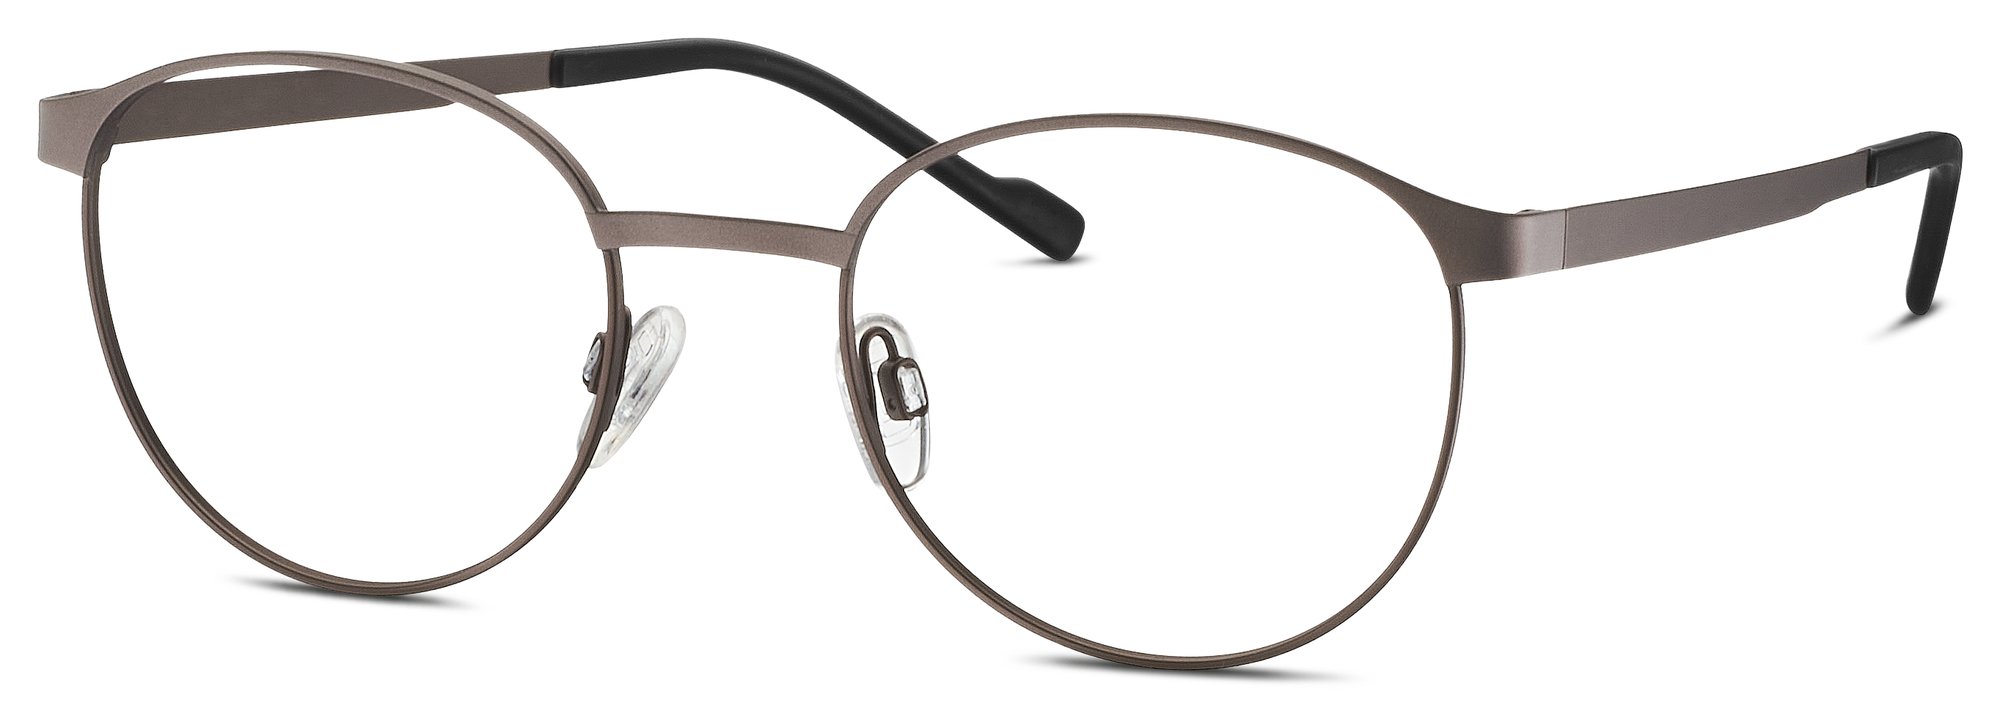 Das Bild zeigt die Korrektionsbrille 820909 60 von der Marke Titanflex in grau.